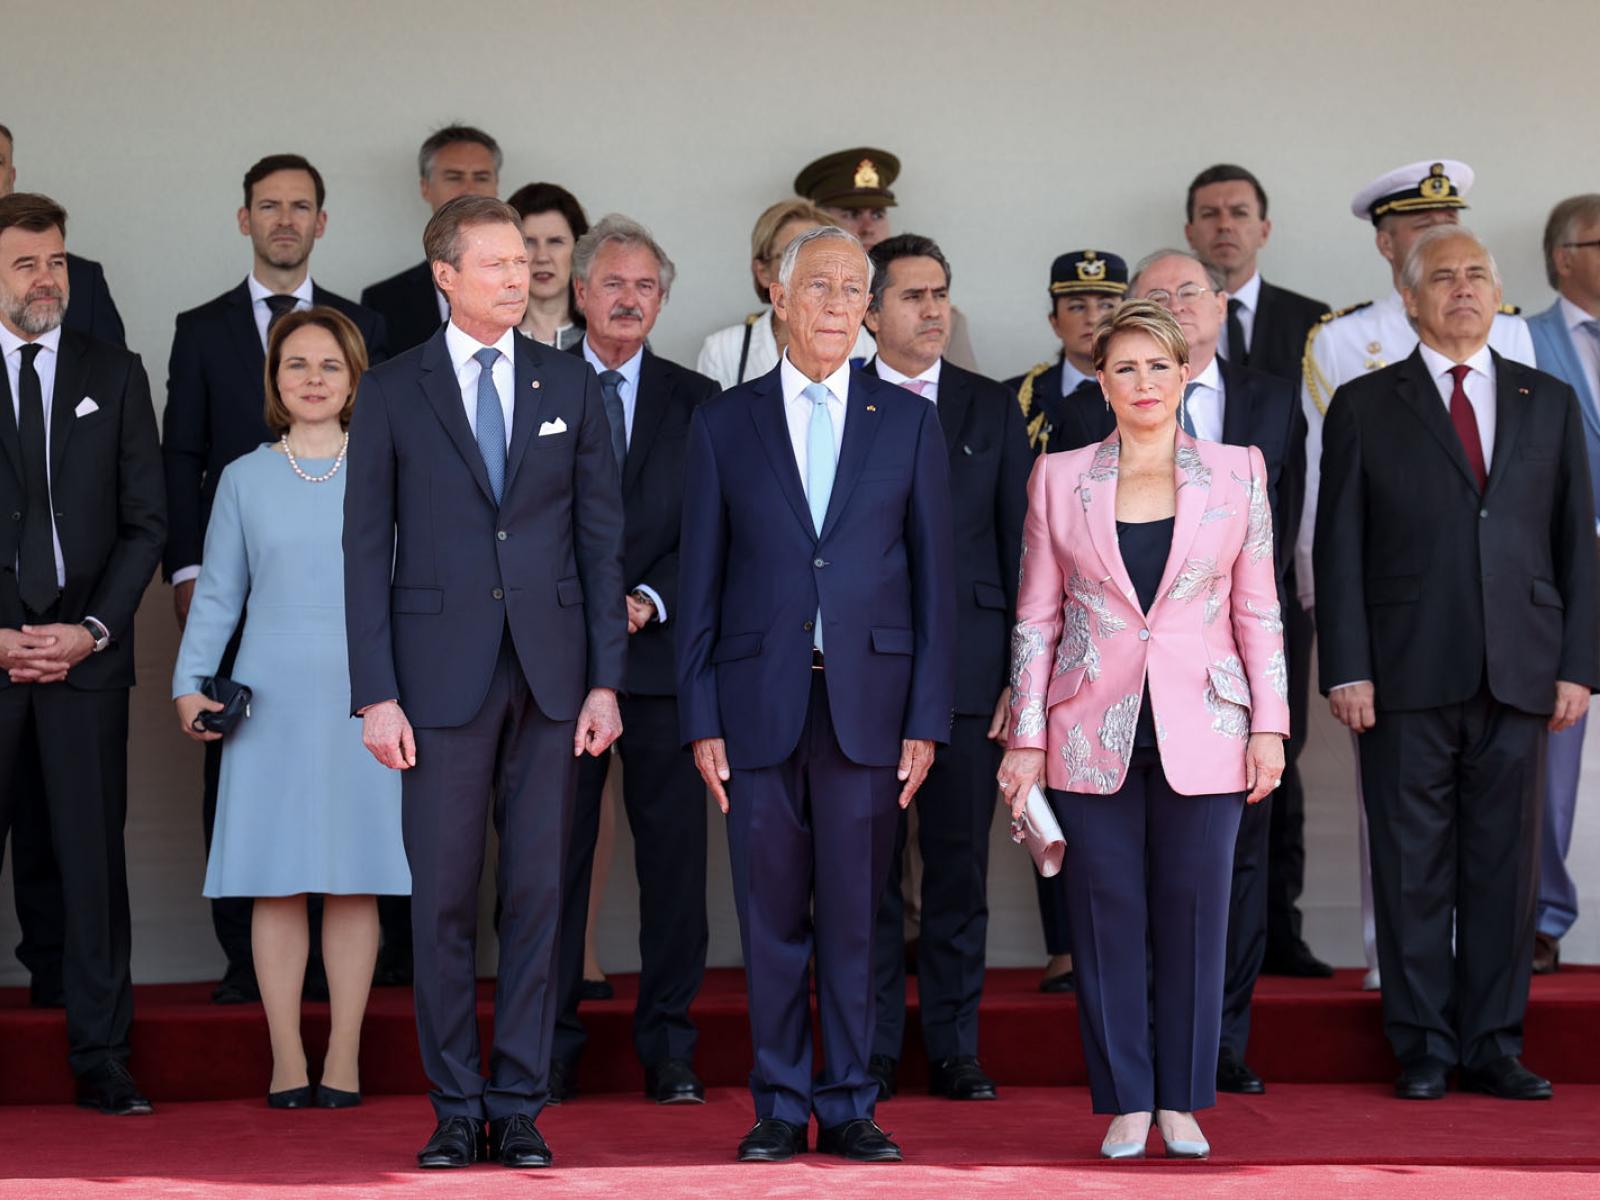 Le Couple grand-ducal et le président portugais dans la tribune officielle